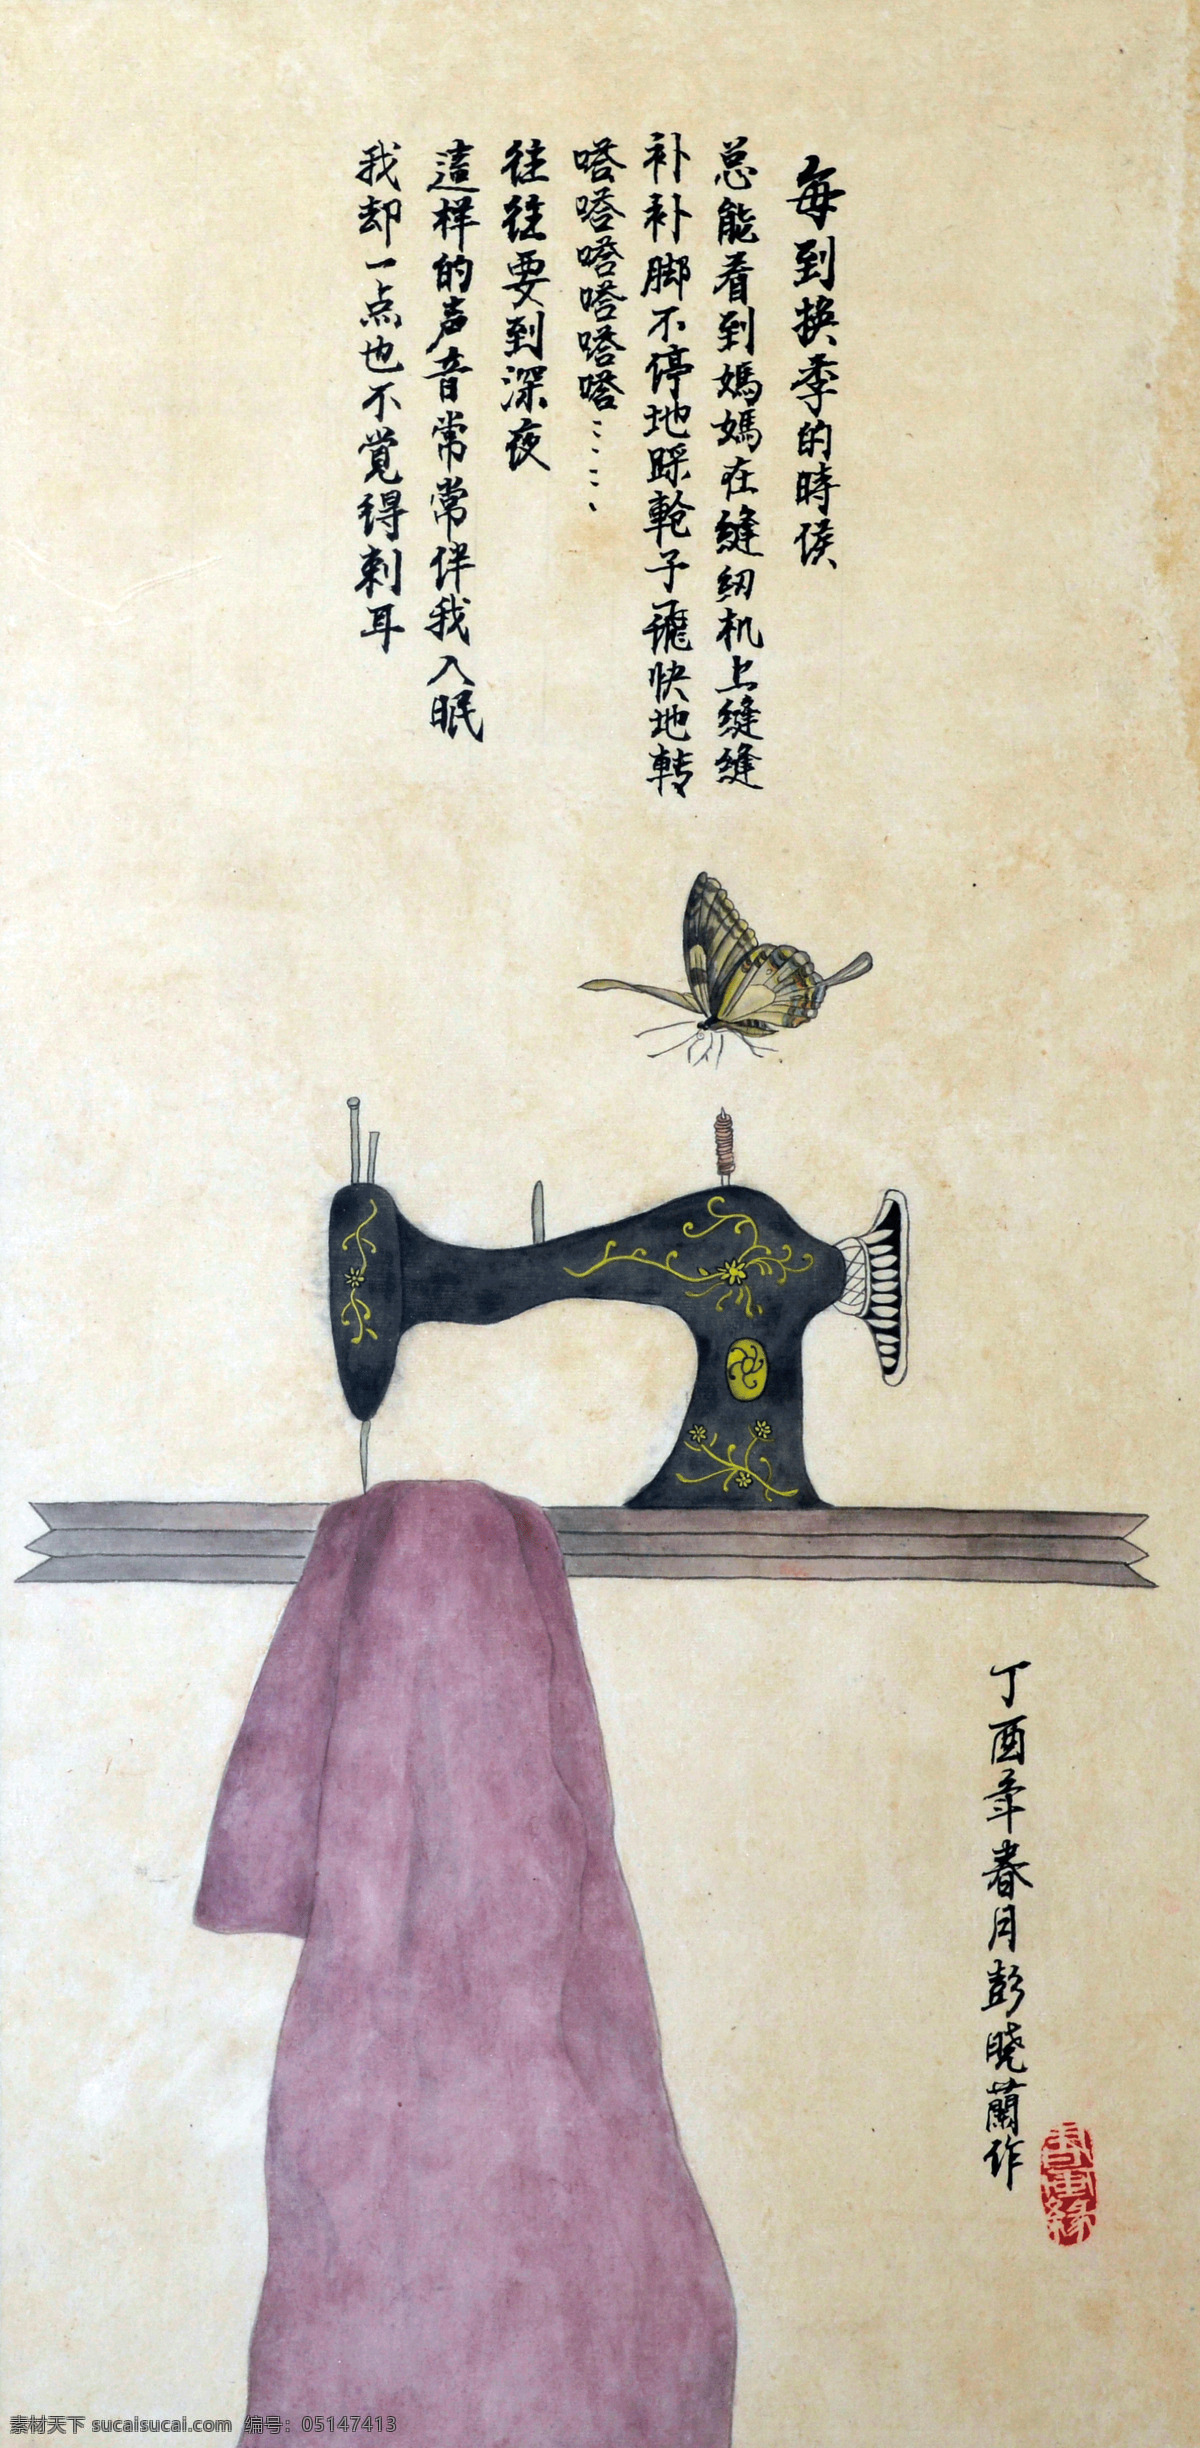 中国画 光阴的故事 油画 美术学 艺术设计 文化艺术 绘画书法